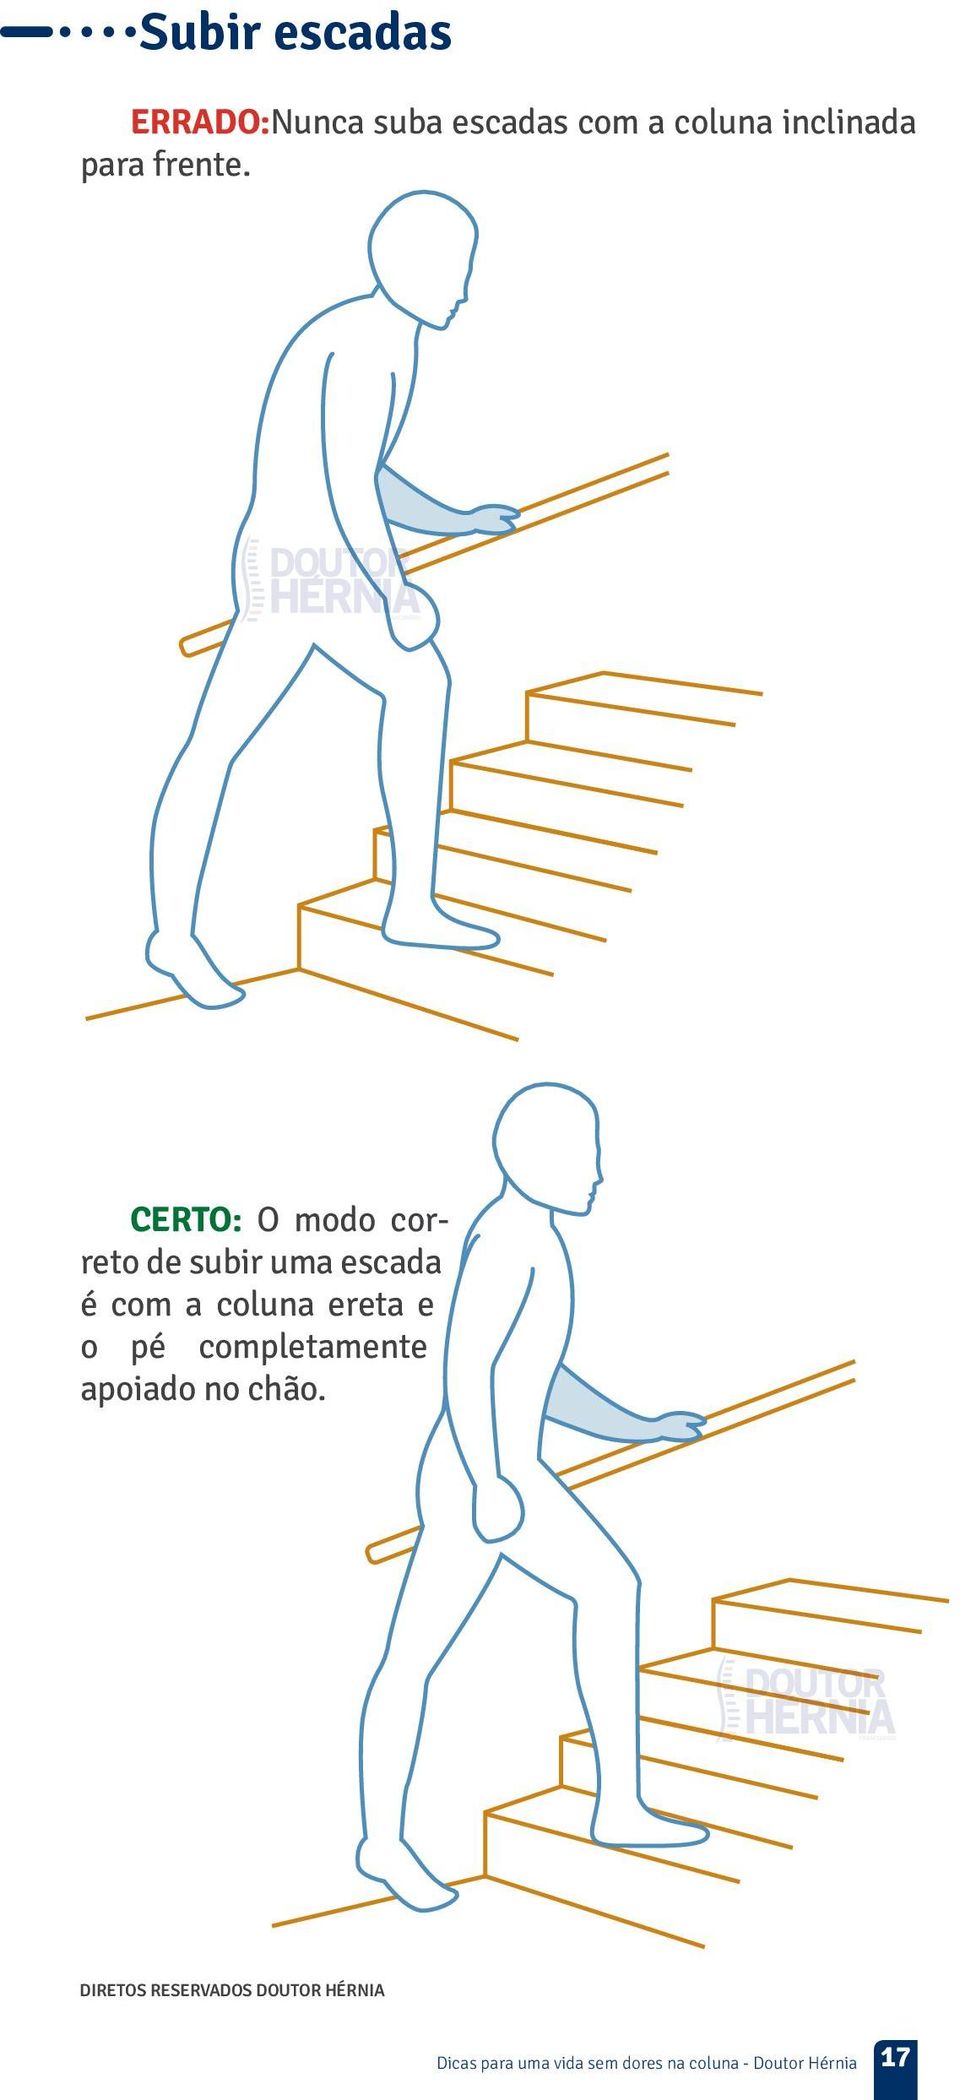 CERTO: O modo correto de subir uma escada é